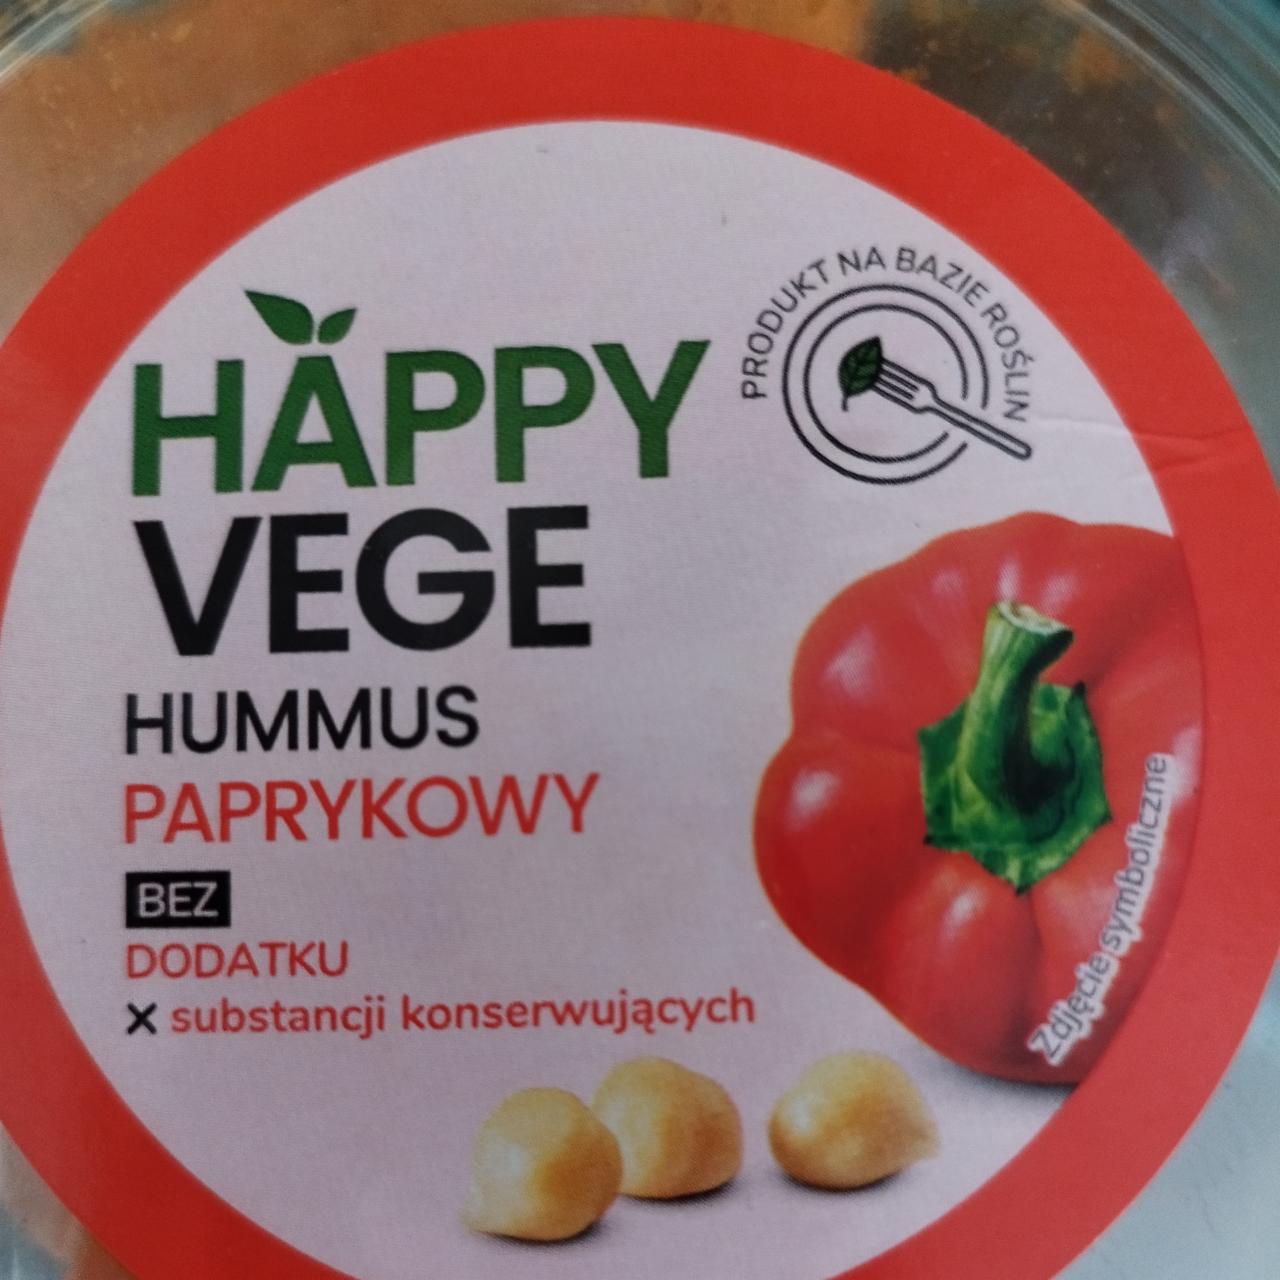 Zdjęcia - Hummus Paprykowy Happy Vege